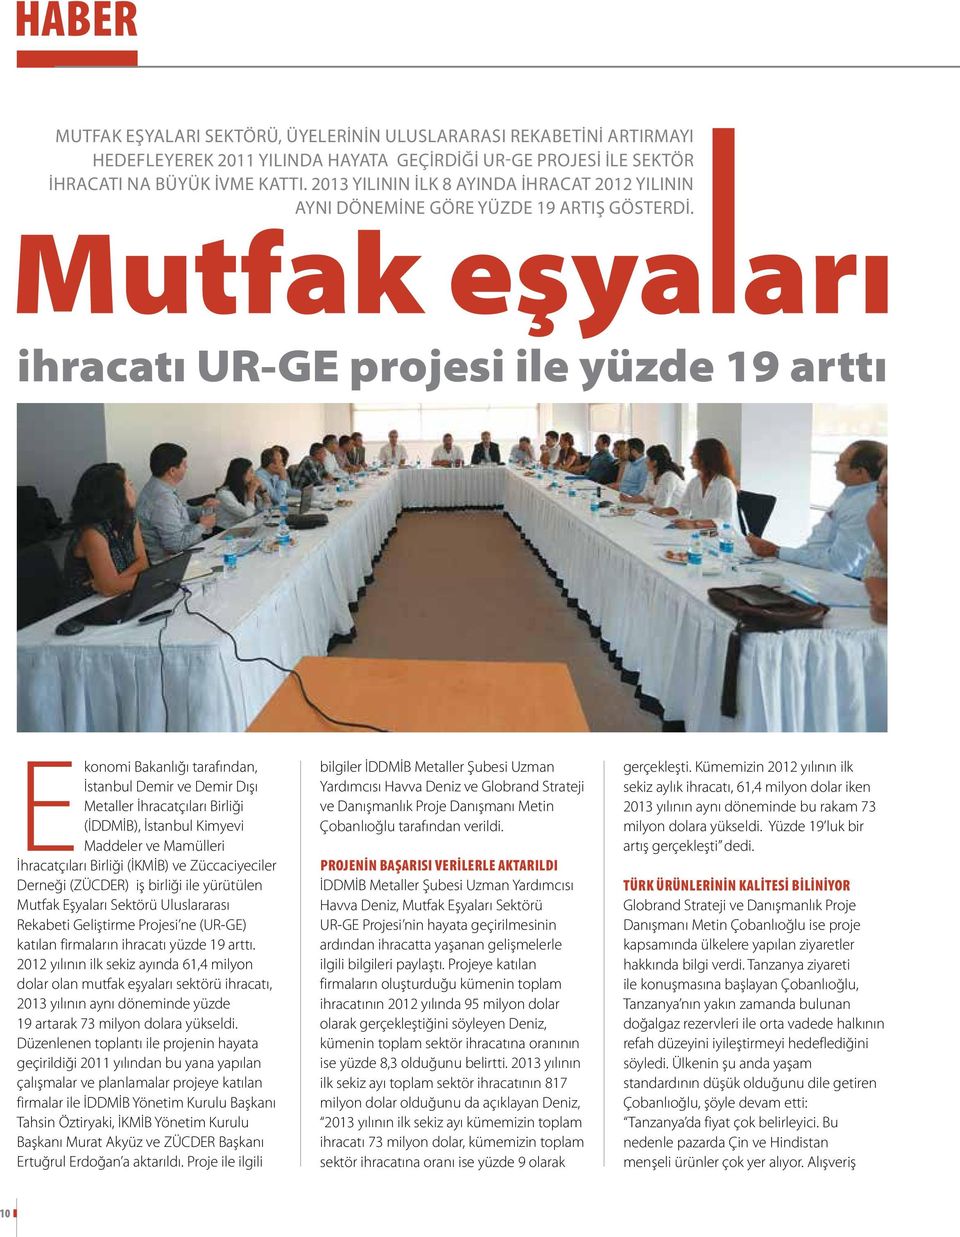 ihracatı UR-GE projesi ile yüzde 19 arttı Ekonomi Bakanlığı tarafından, İstanbul Demir ve Demir Dışı Metaller İhracatçıları Birliği (İDDMİB), İstanbul Kimyevi Maddeler ve Mamülleri İhracatçıları